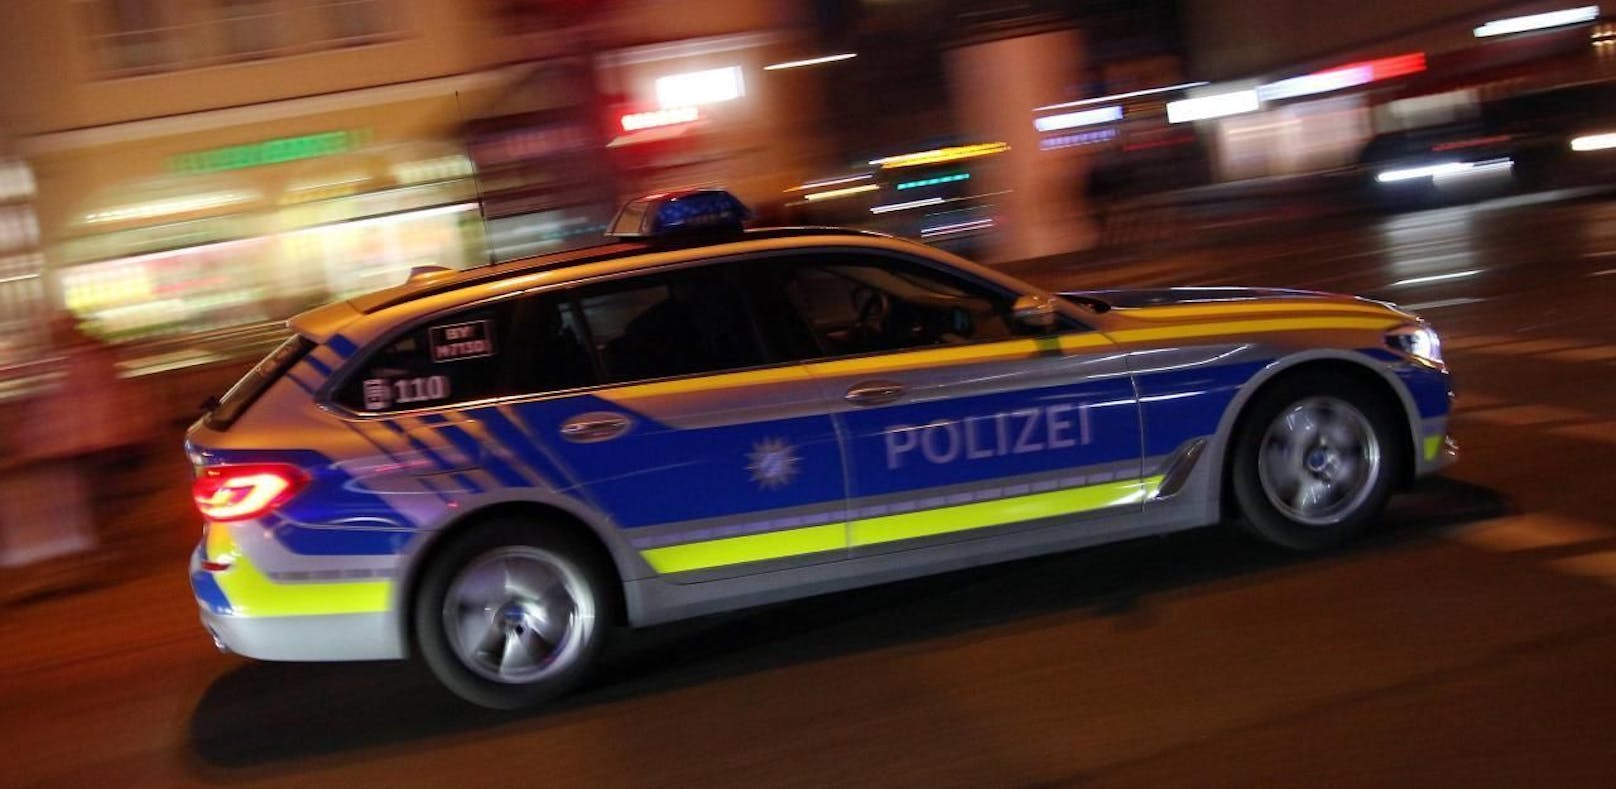 Polizeiwagen in München. (Symbolbild)